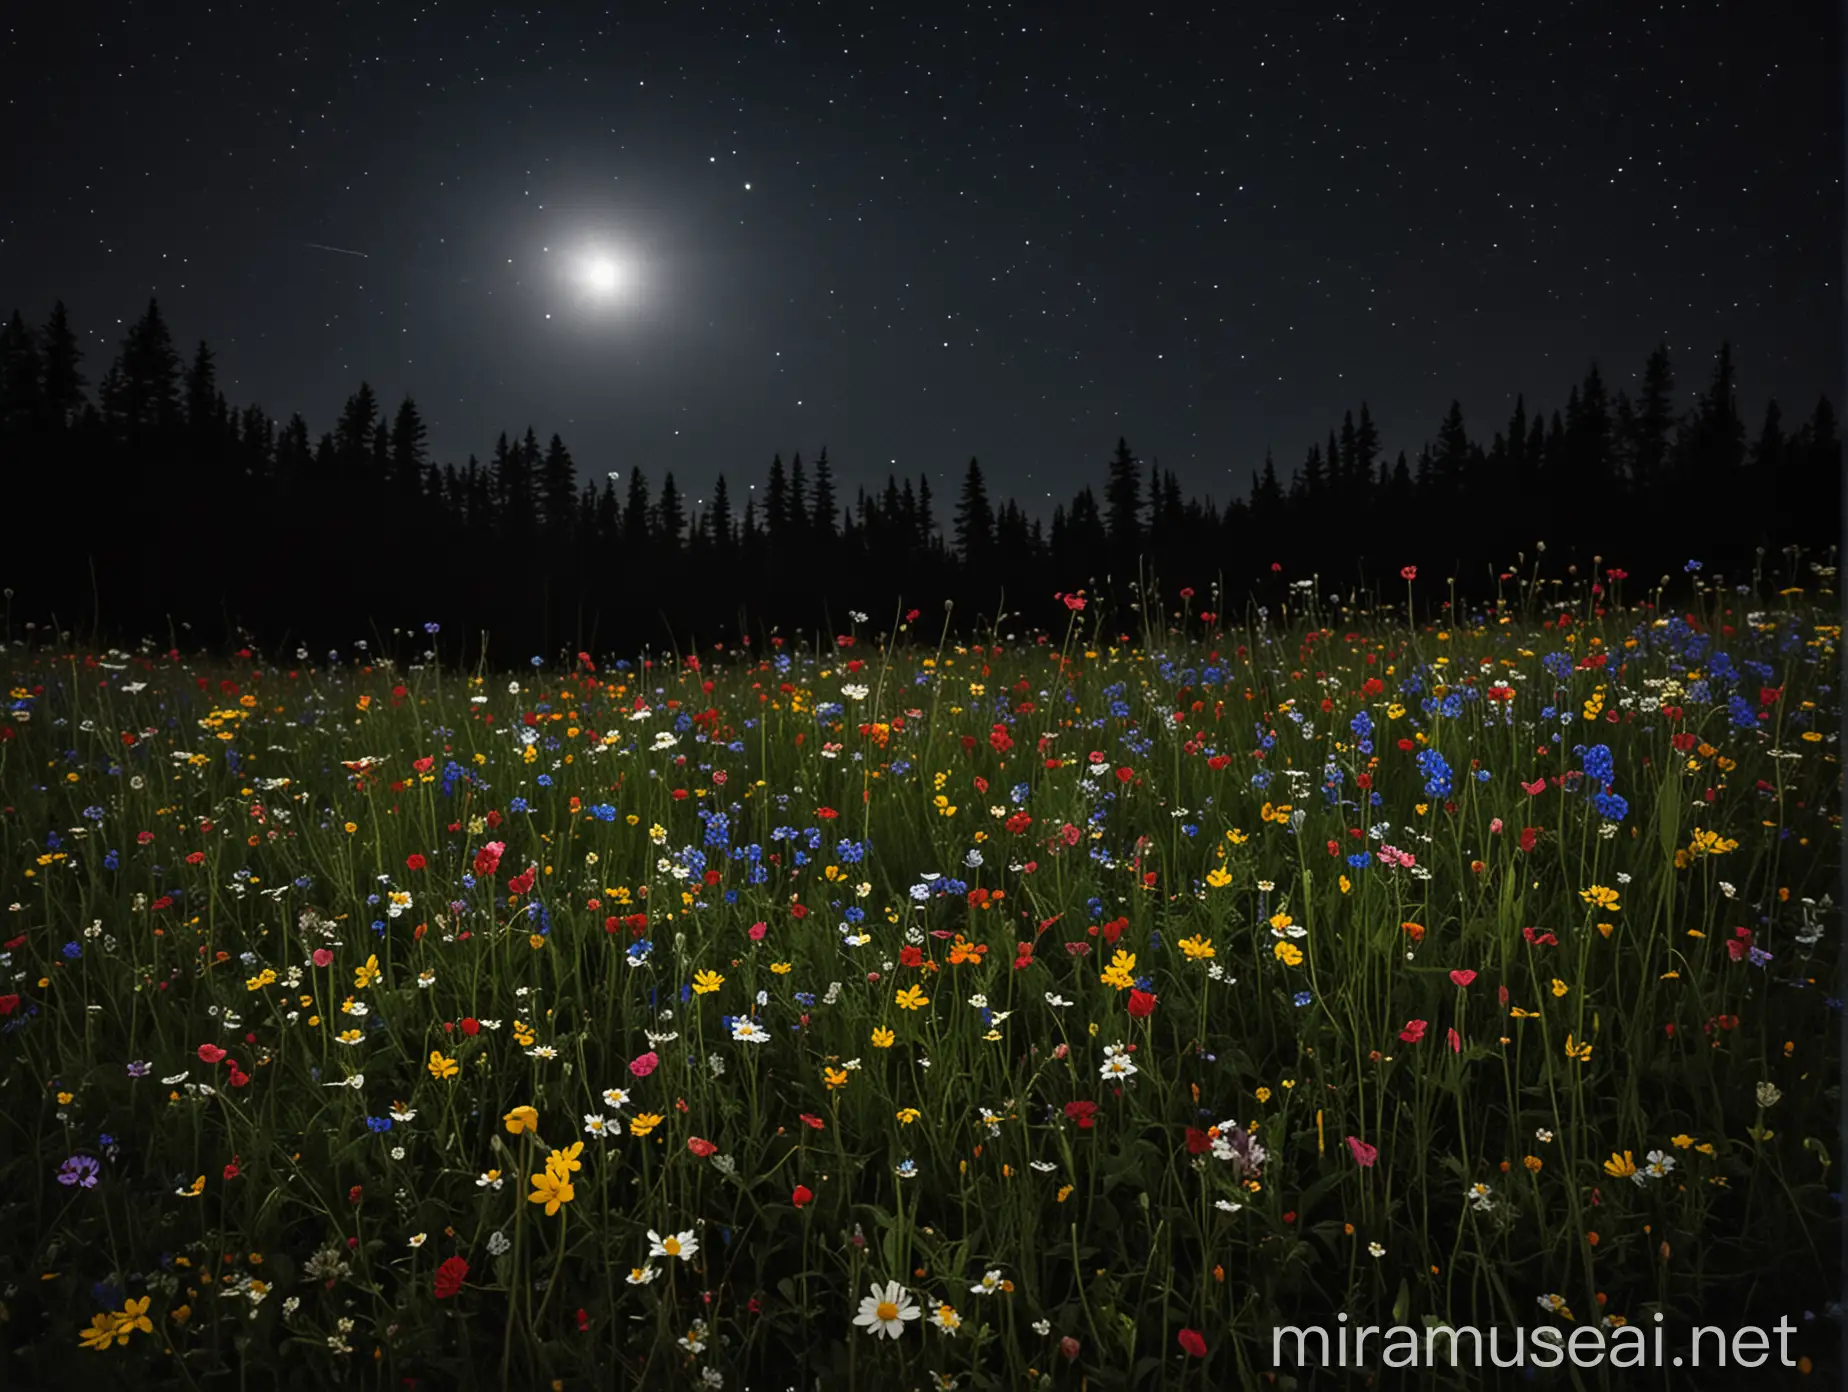 wildflowers at night
